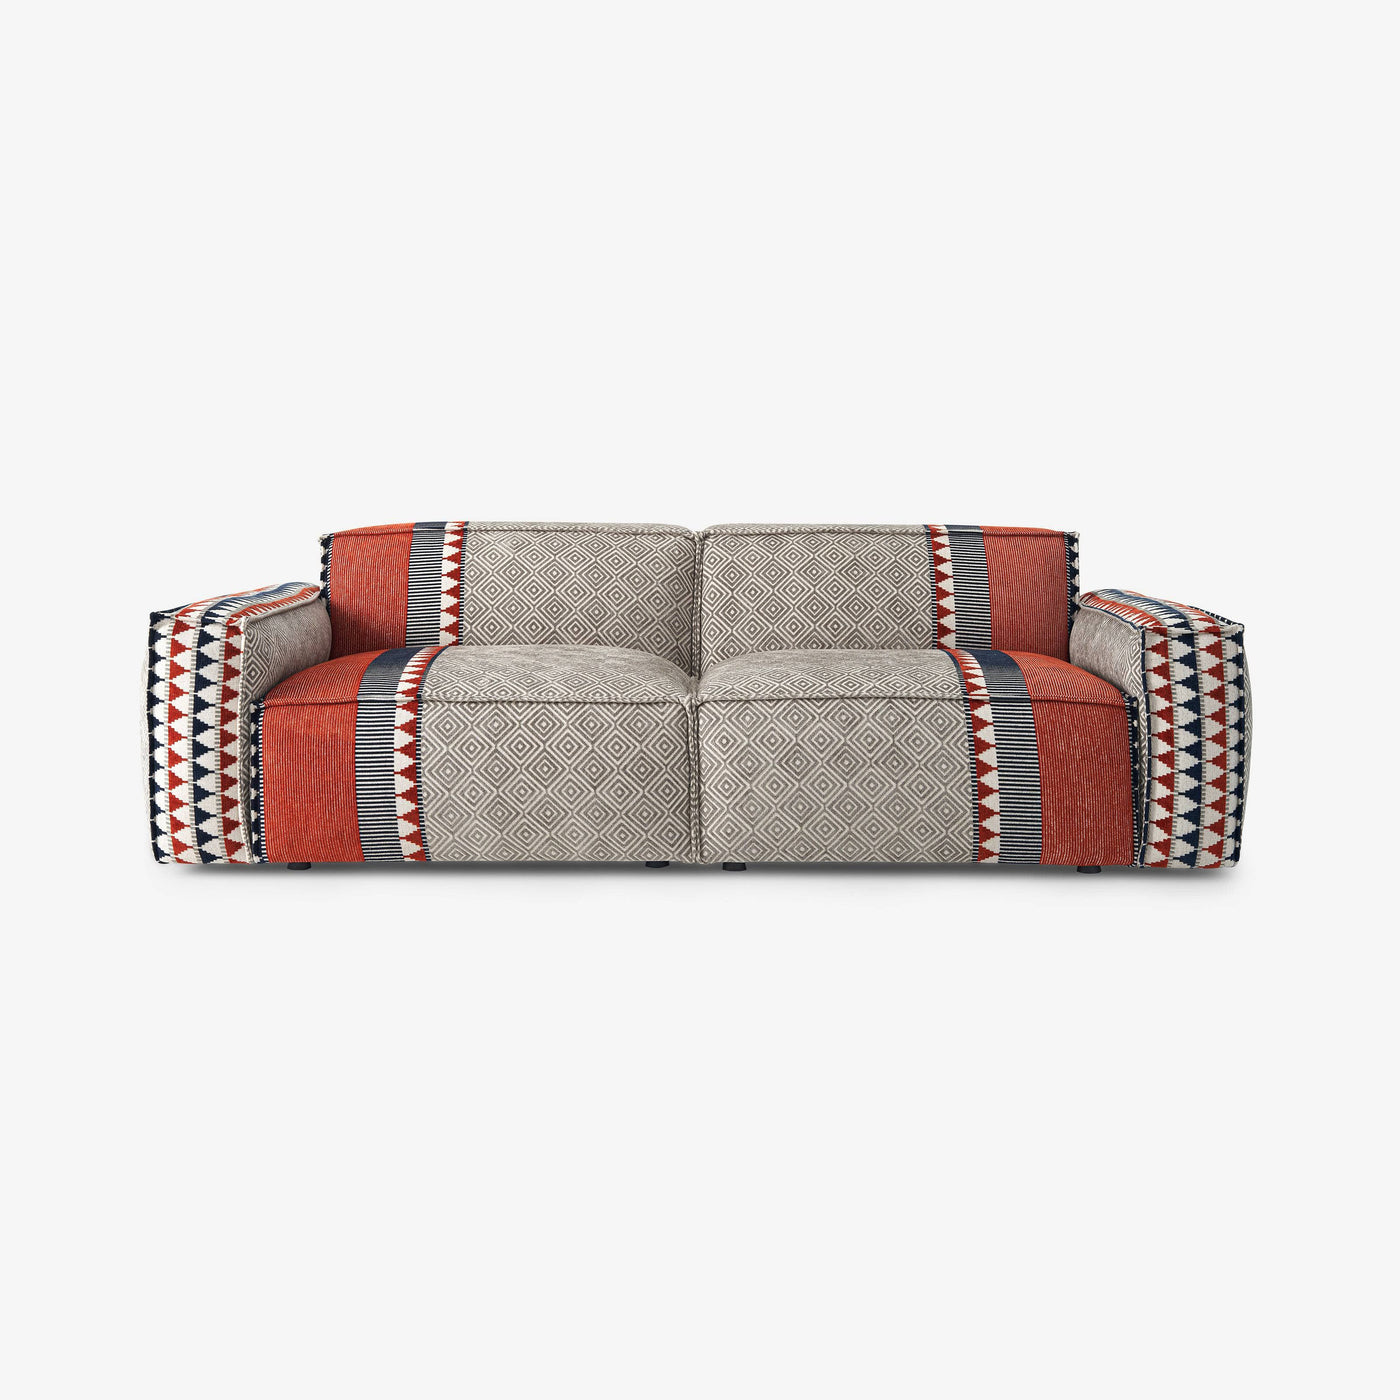 Torba 3 Seater Sofa, Multicoloured 1